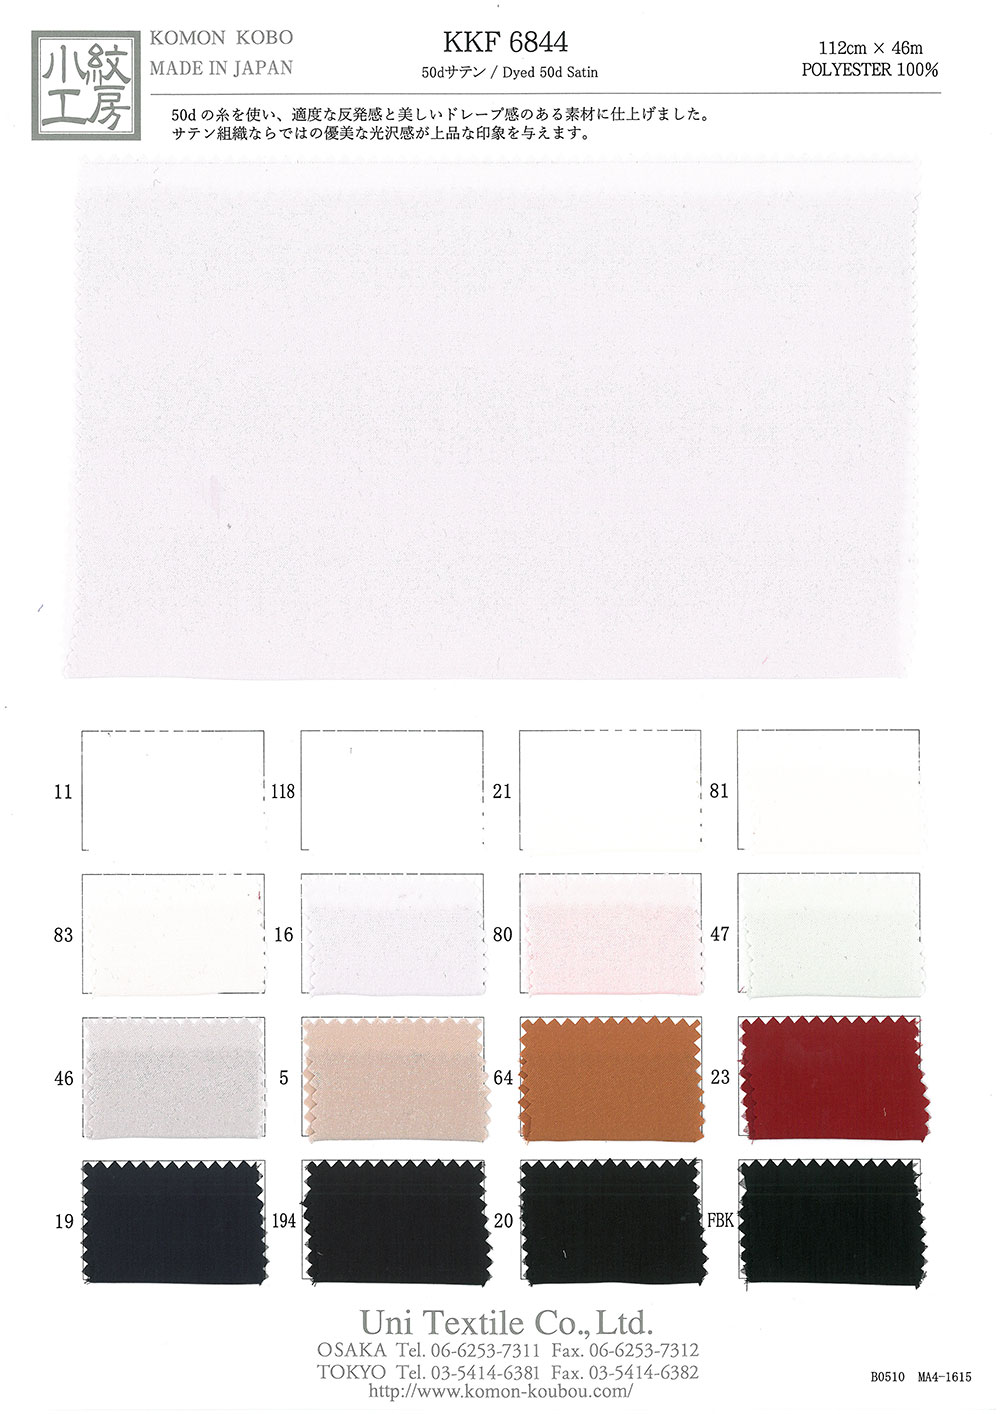 KKF6844 50d Satin[Textilgewebe] Uni Textile